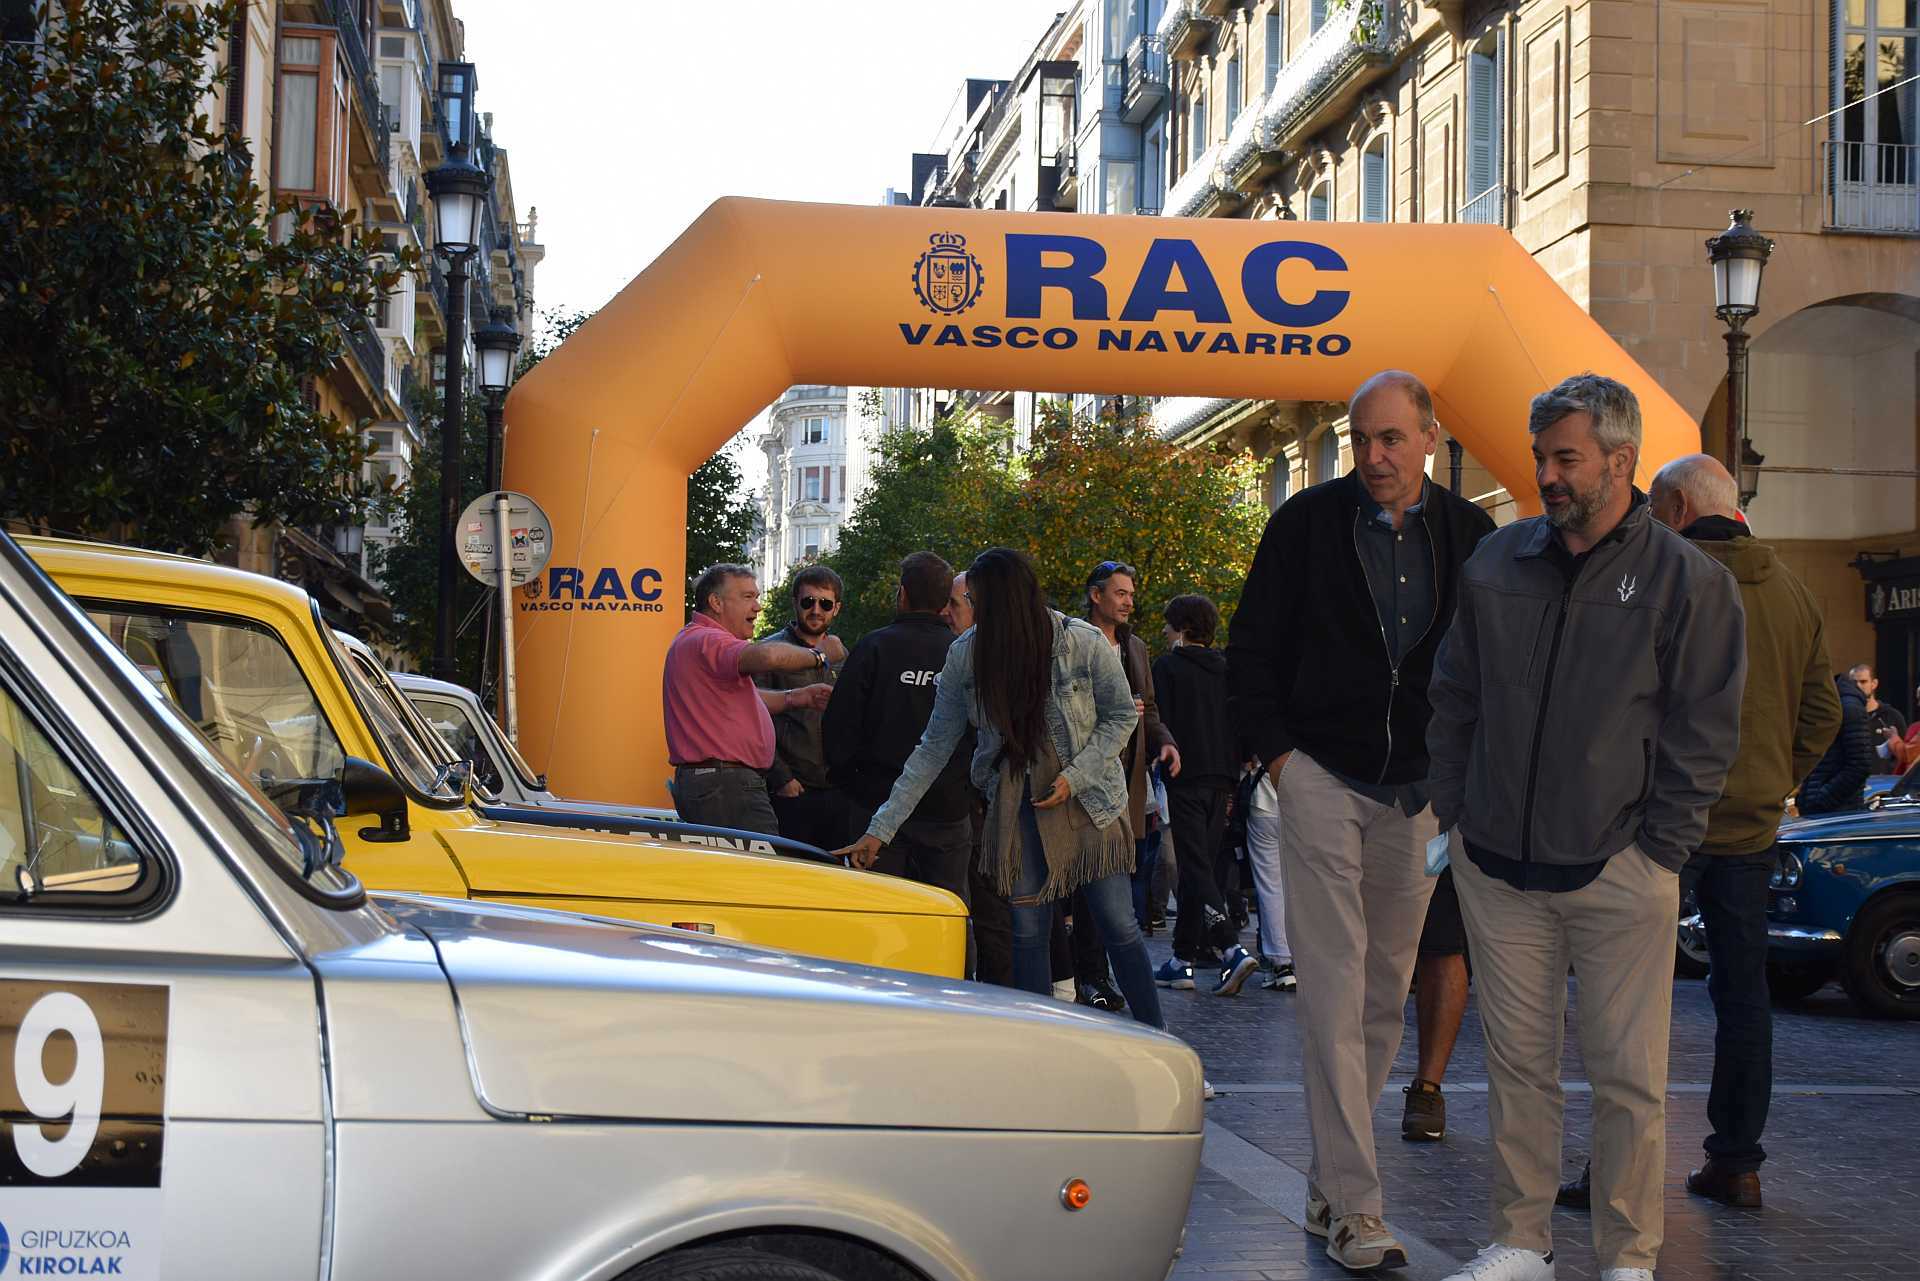 rally RACVN3 - Comienzo inmejorable del Rallye de Clásicos del RACVN en San Sebastián